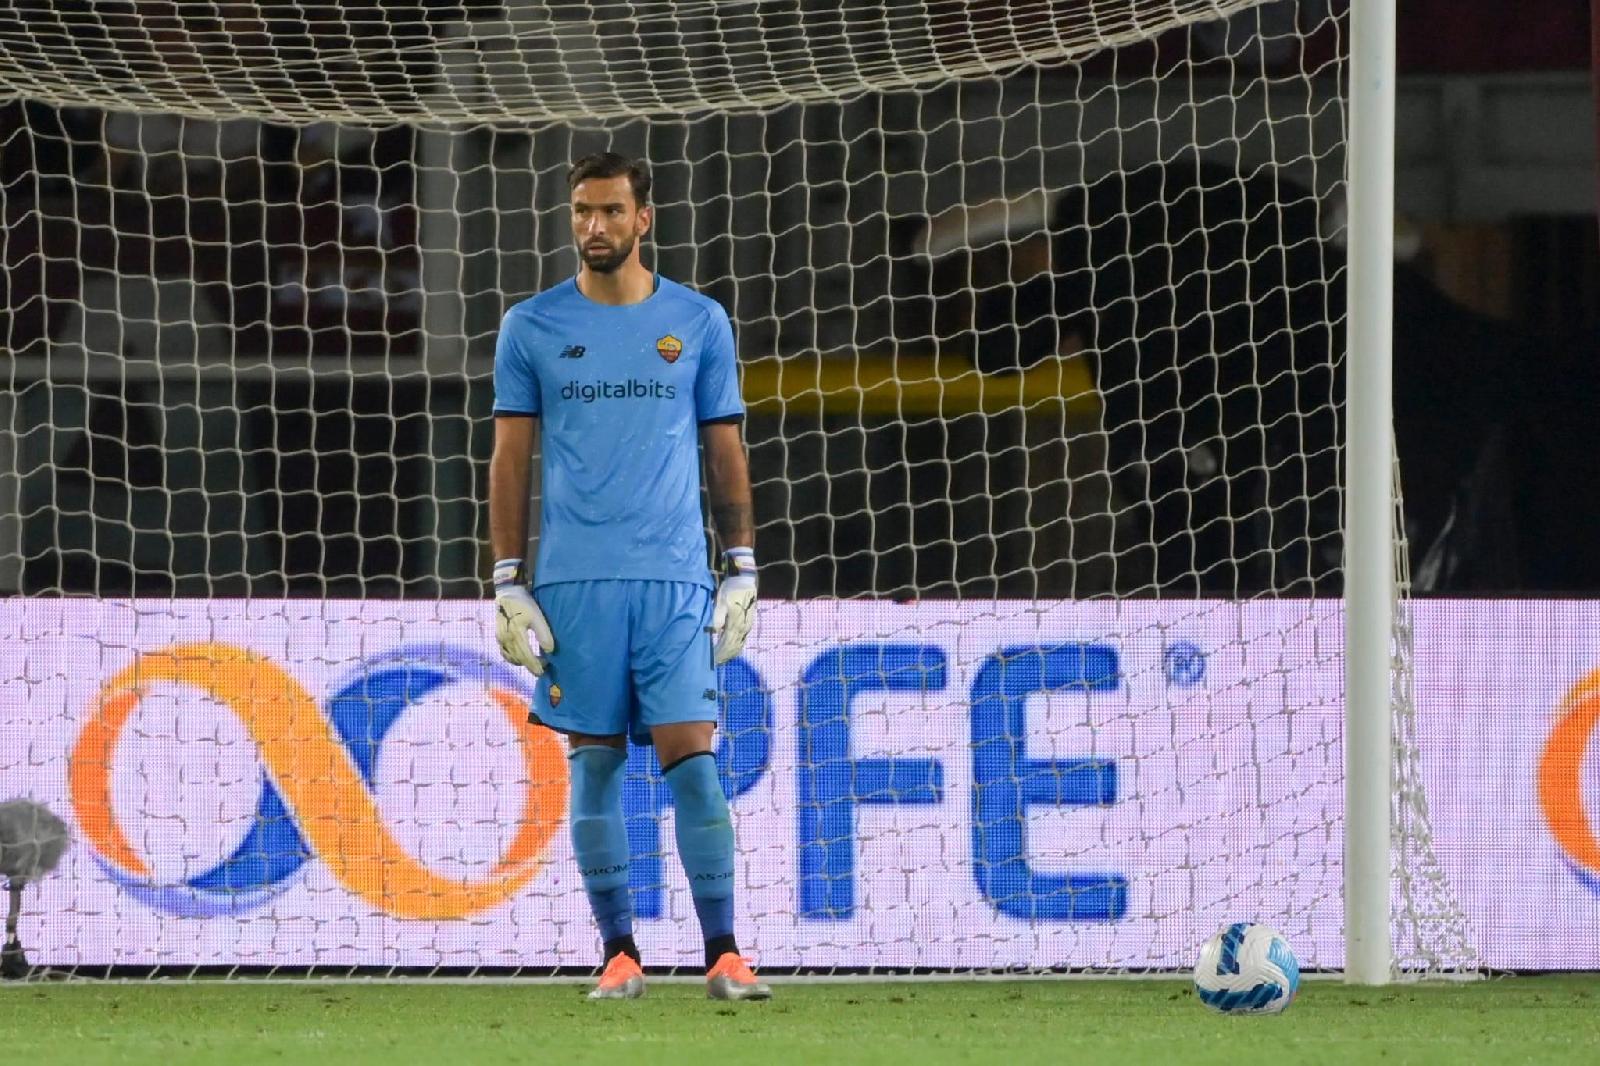 Rui Patricio a difesa della porta giallorossa (As Roma via Getty Images)